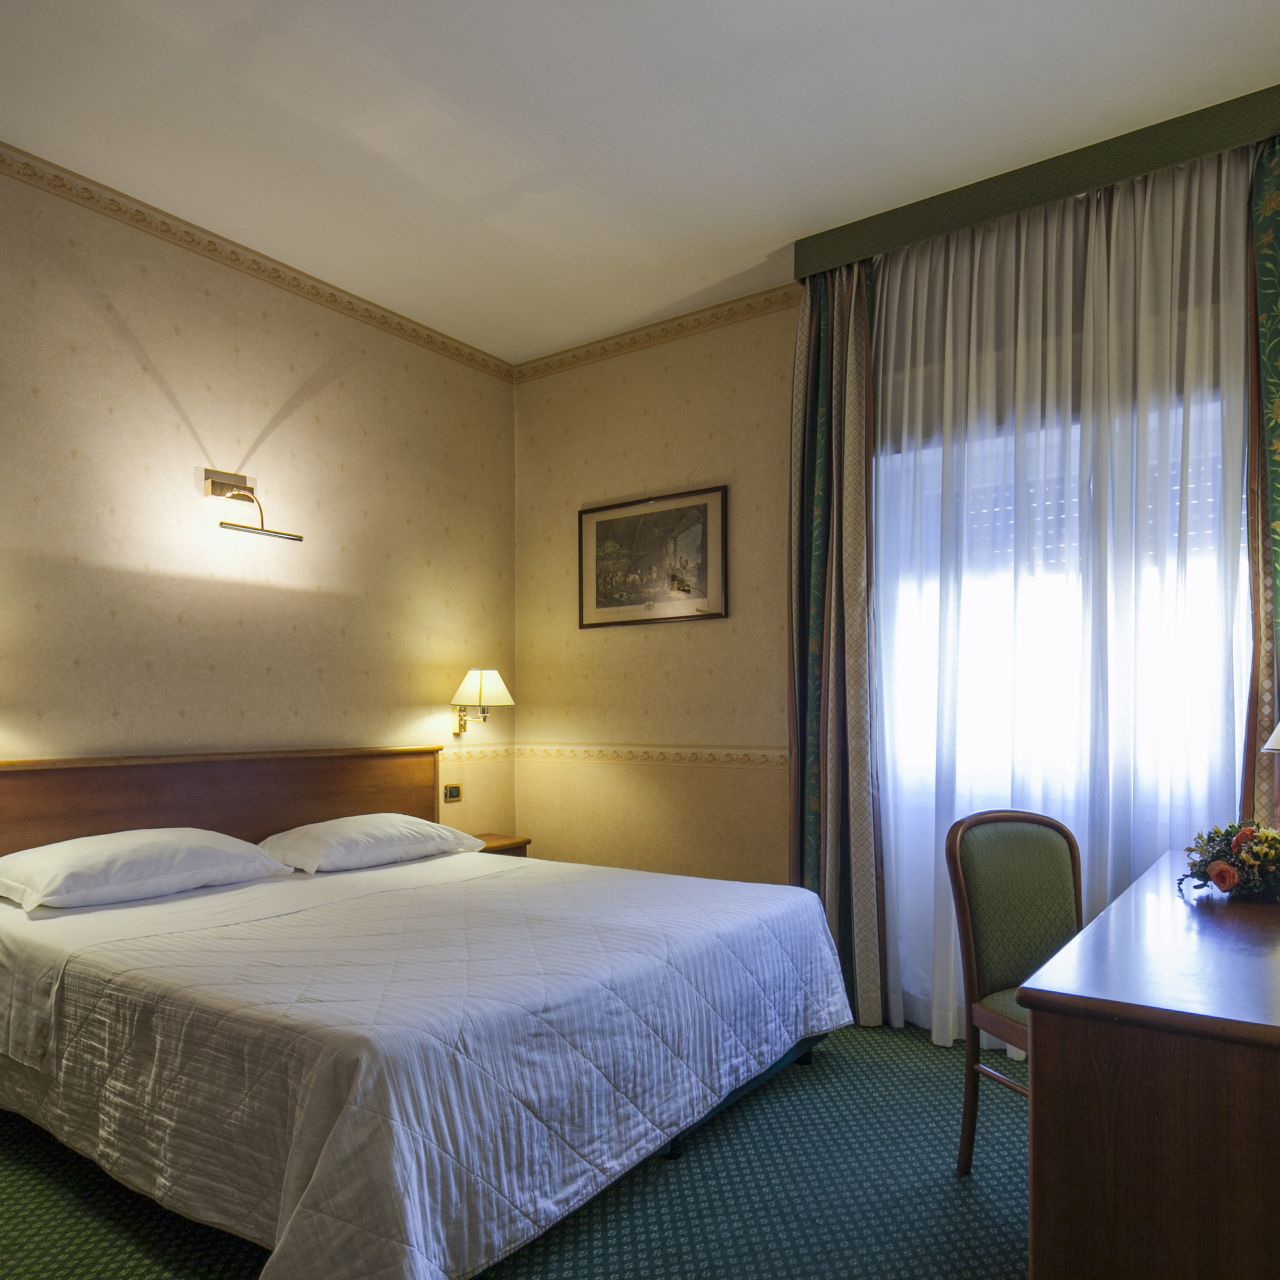 Nuovo Hotel del Porto - Bologna - Great prices at HOTEL INFO